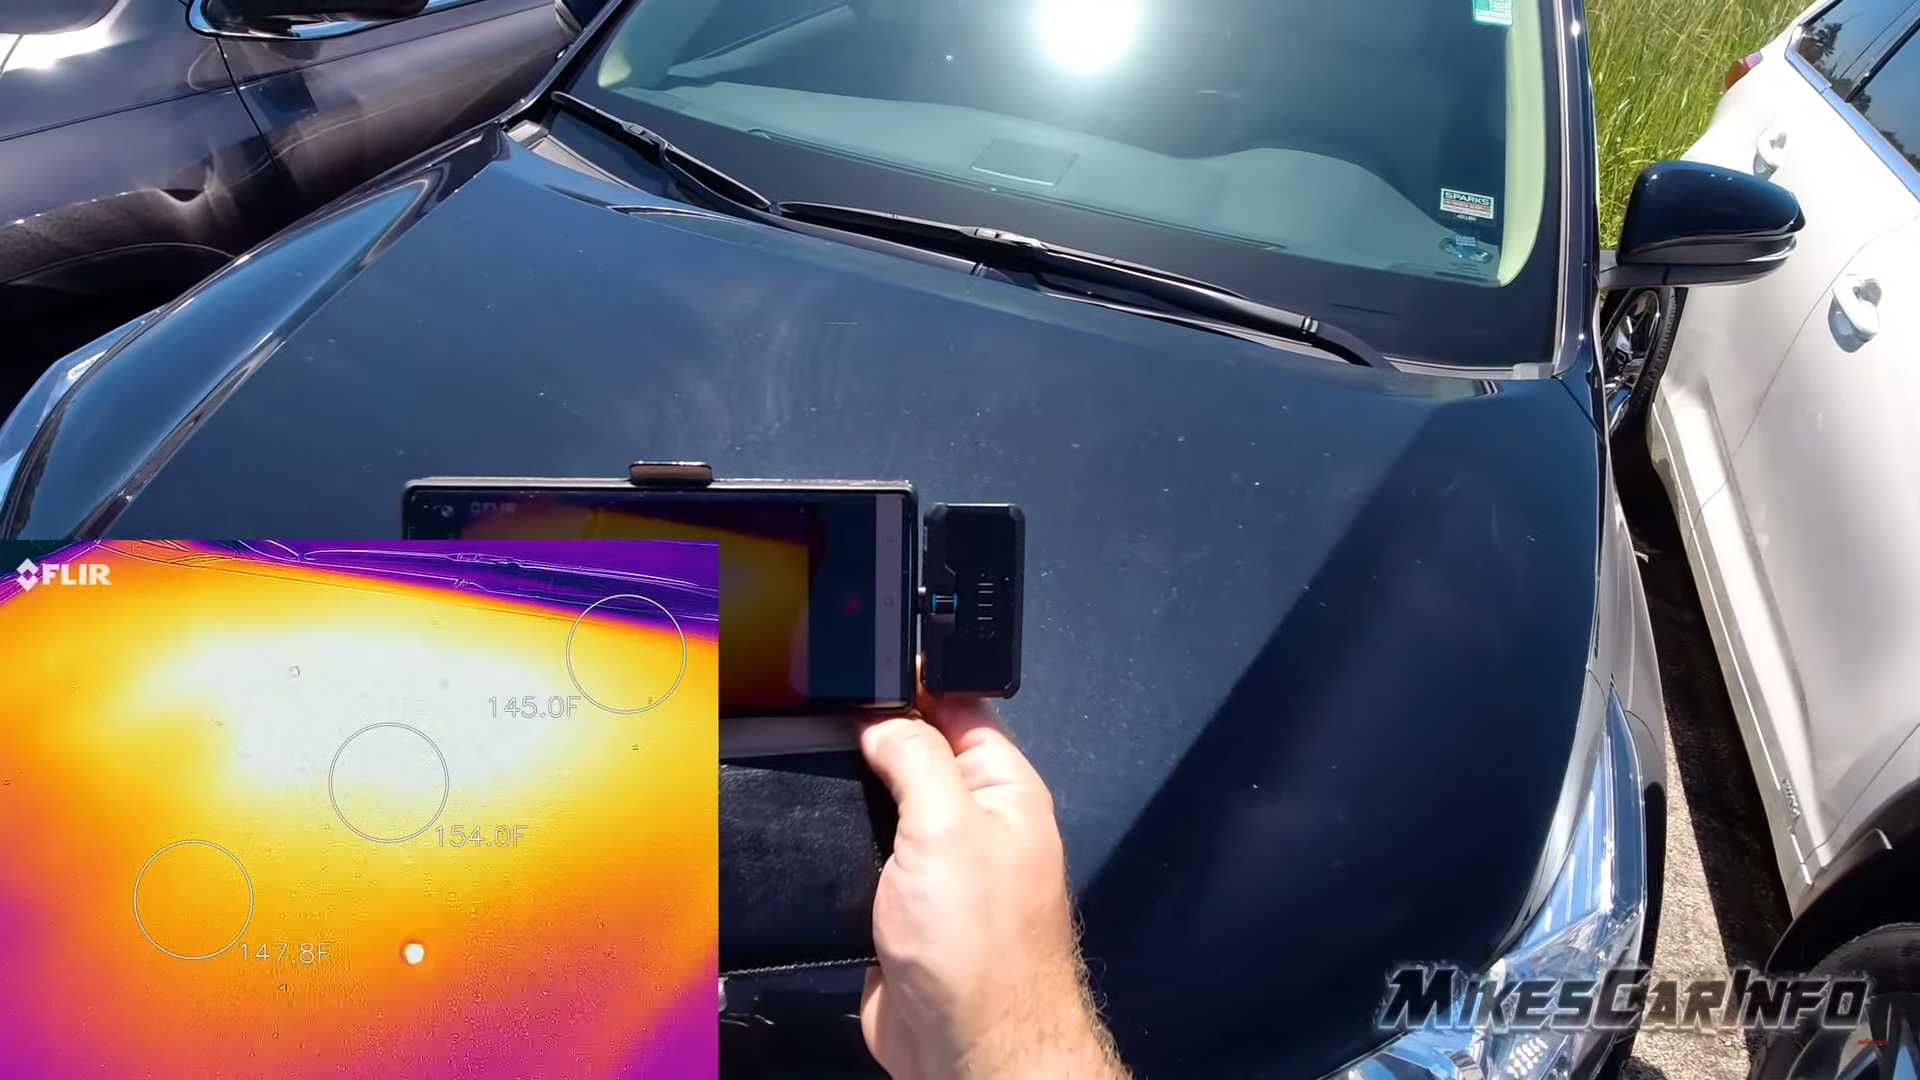 "بالفيديو" لأي مدى تختلف درجة حرارة السيارة اعتماداً على لونها؟ 3